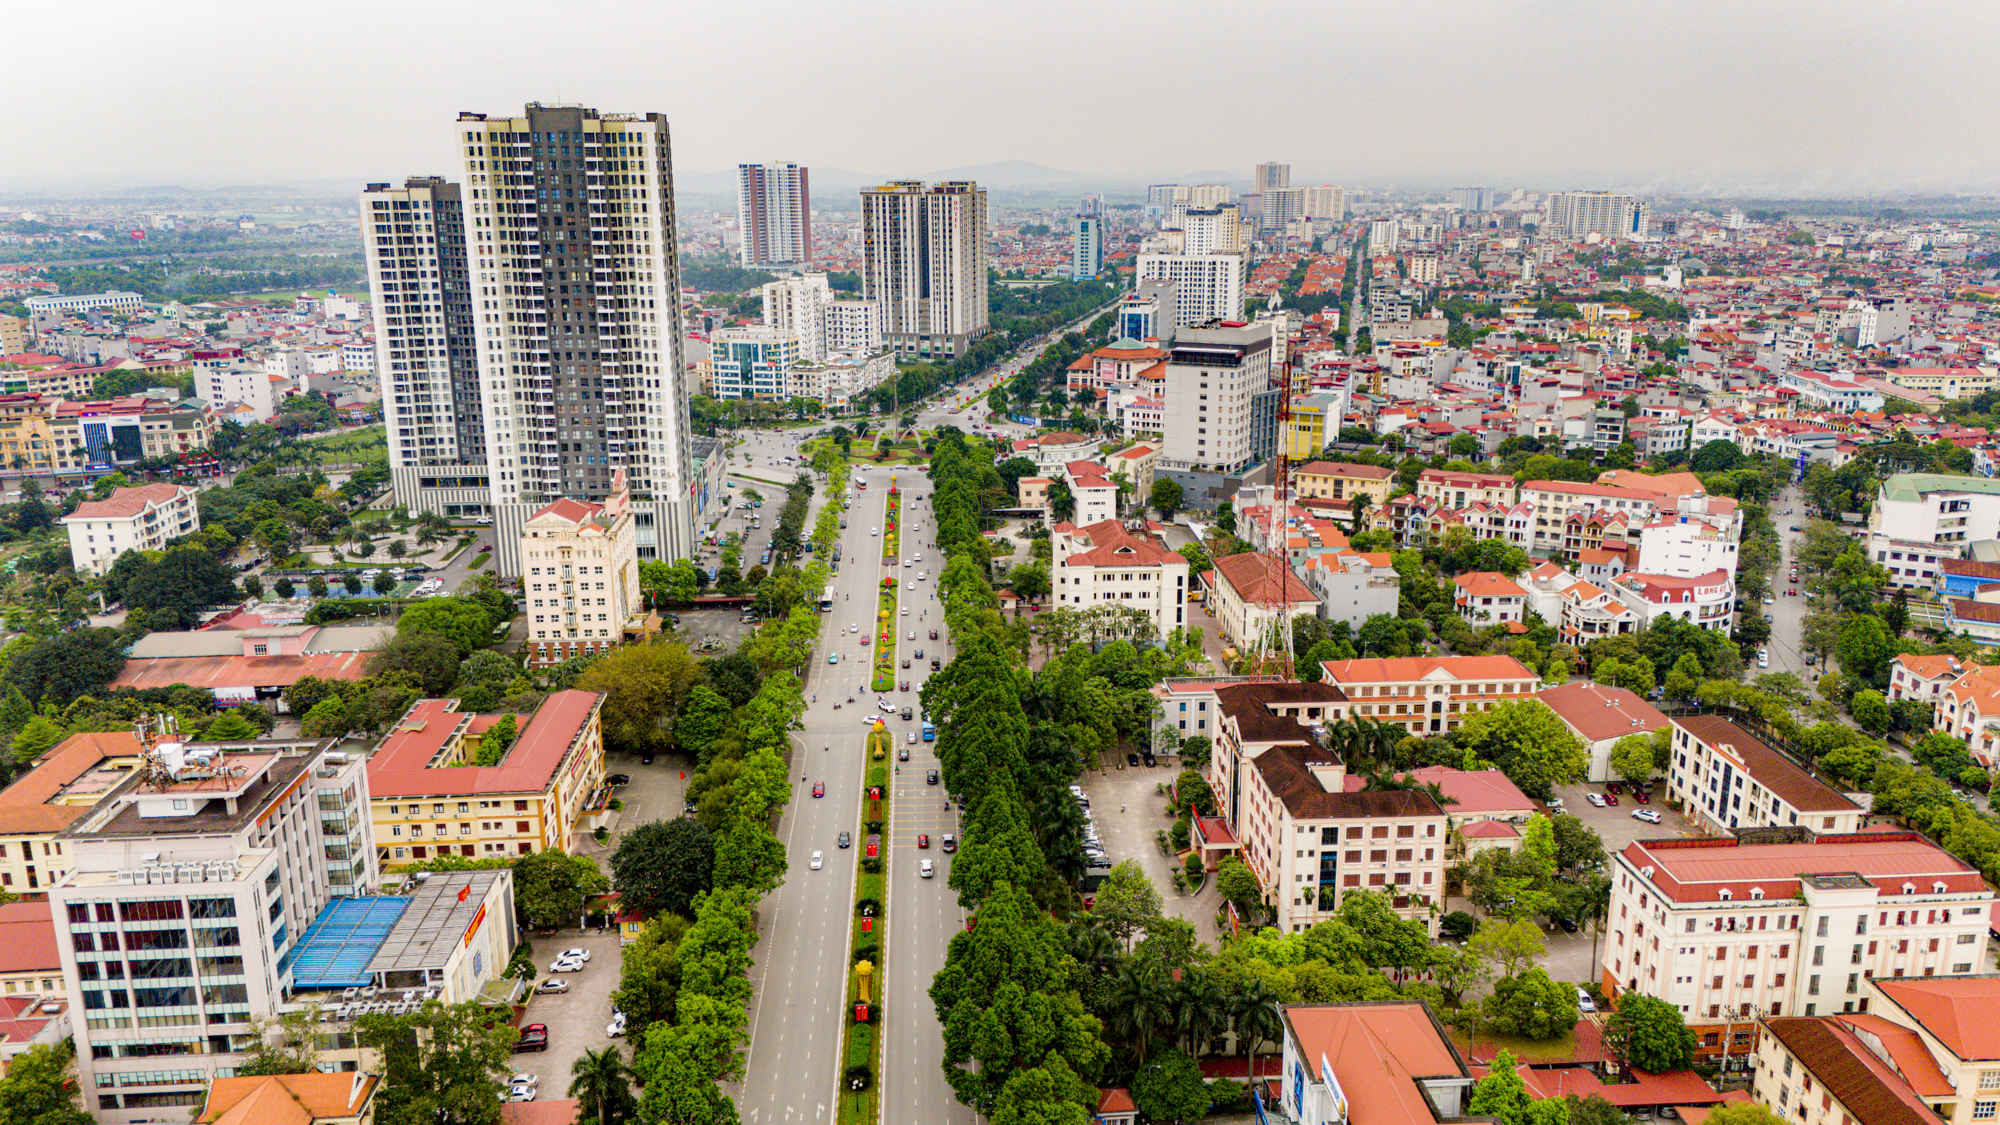 Khu vực trung tâm của trung tâm tỉnh sắp lên thành phố: Có khu hành chính độc đáo bậc nhất Việt Nam; Vingroup, Vietcombank phô diễn vị thế- Ảnh 2.